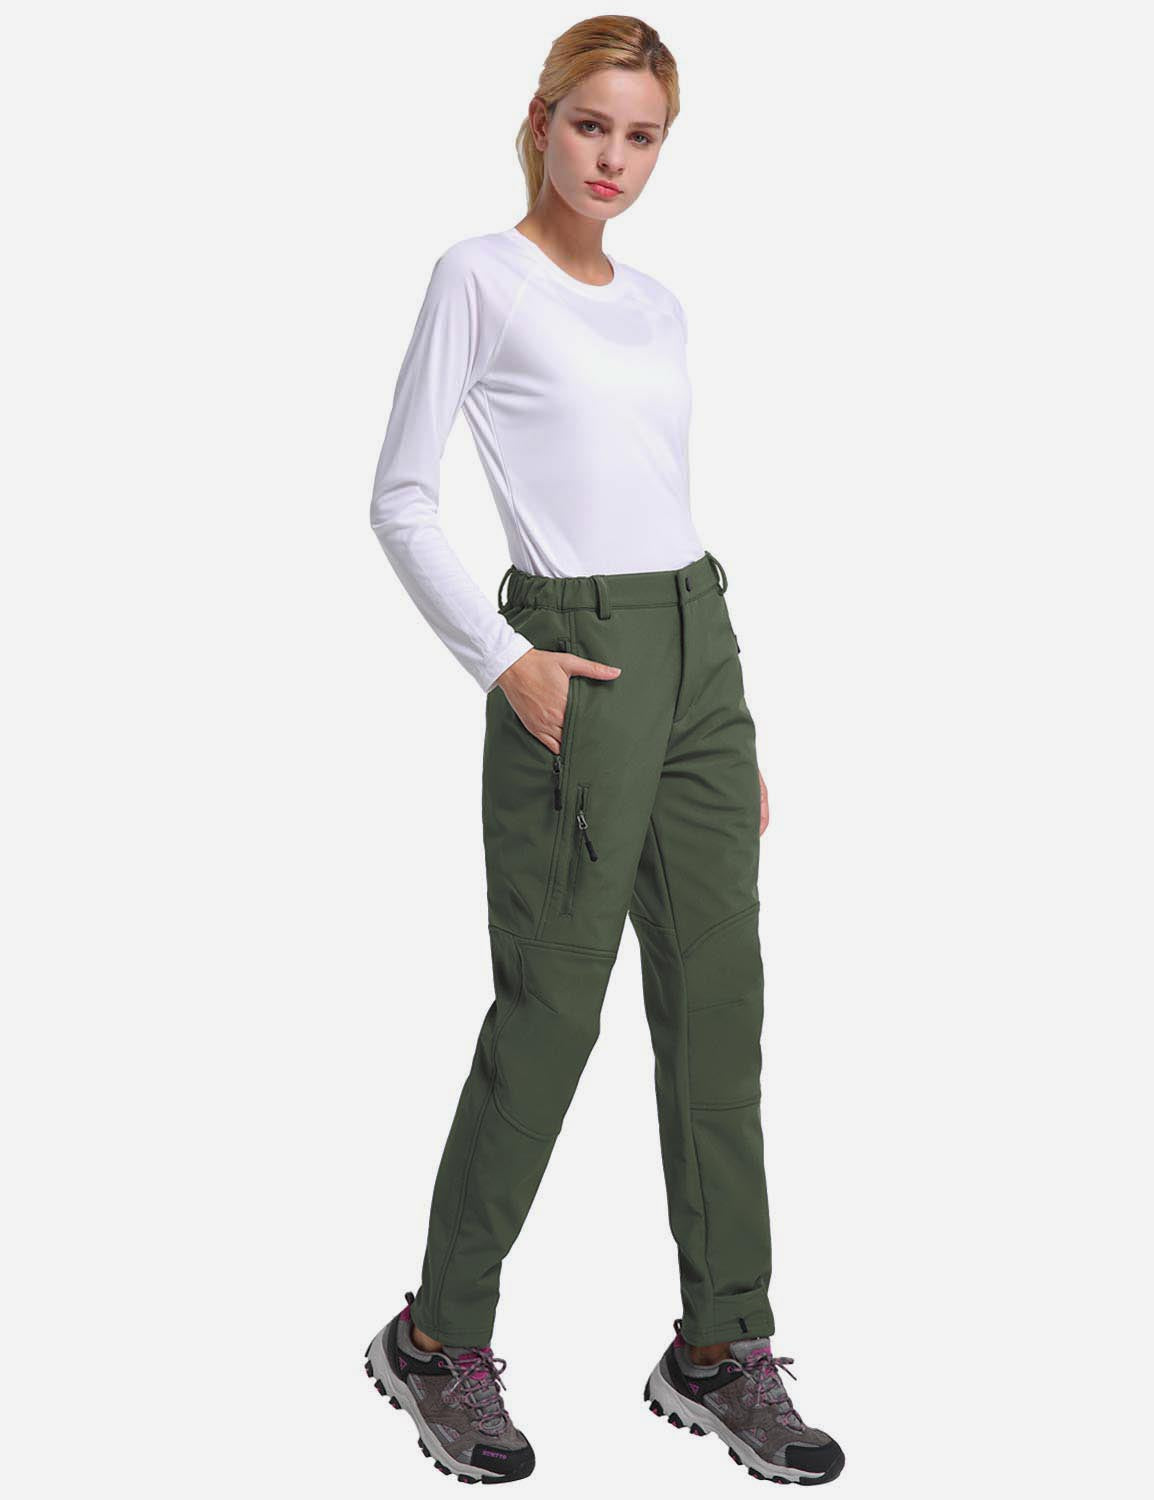 Baleaf Women's Fleece Wind- & Waterproof Moutaineering Outdoor Pants agb010 Army Green Full